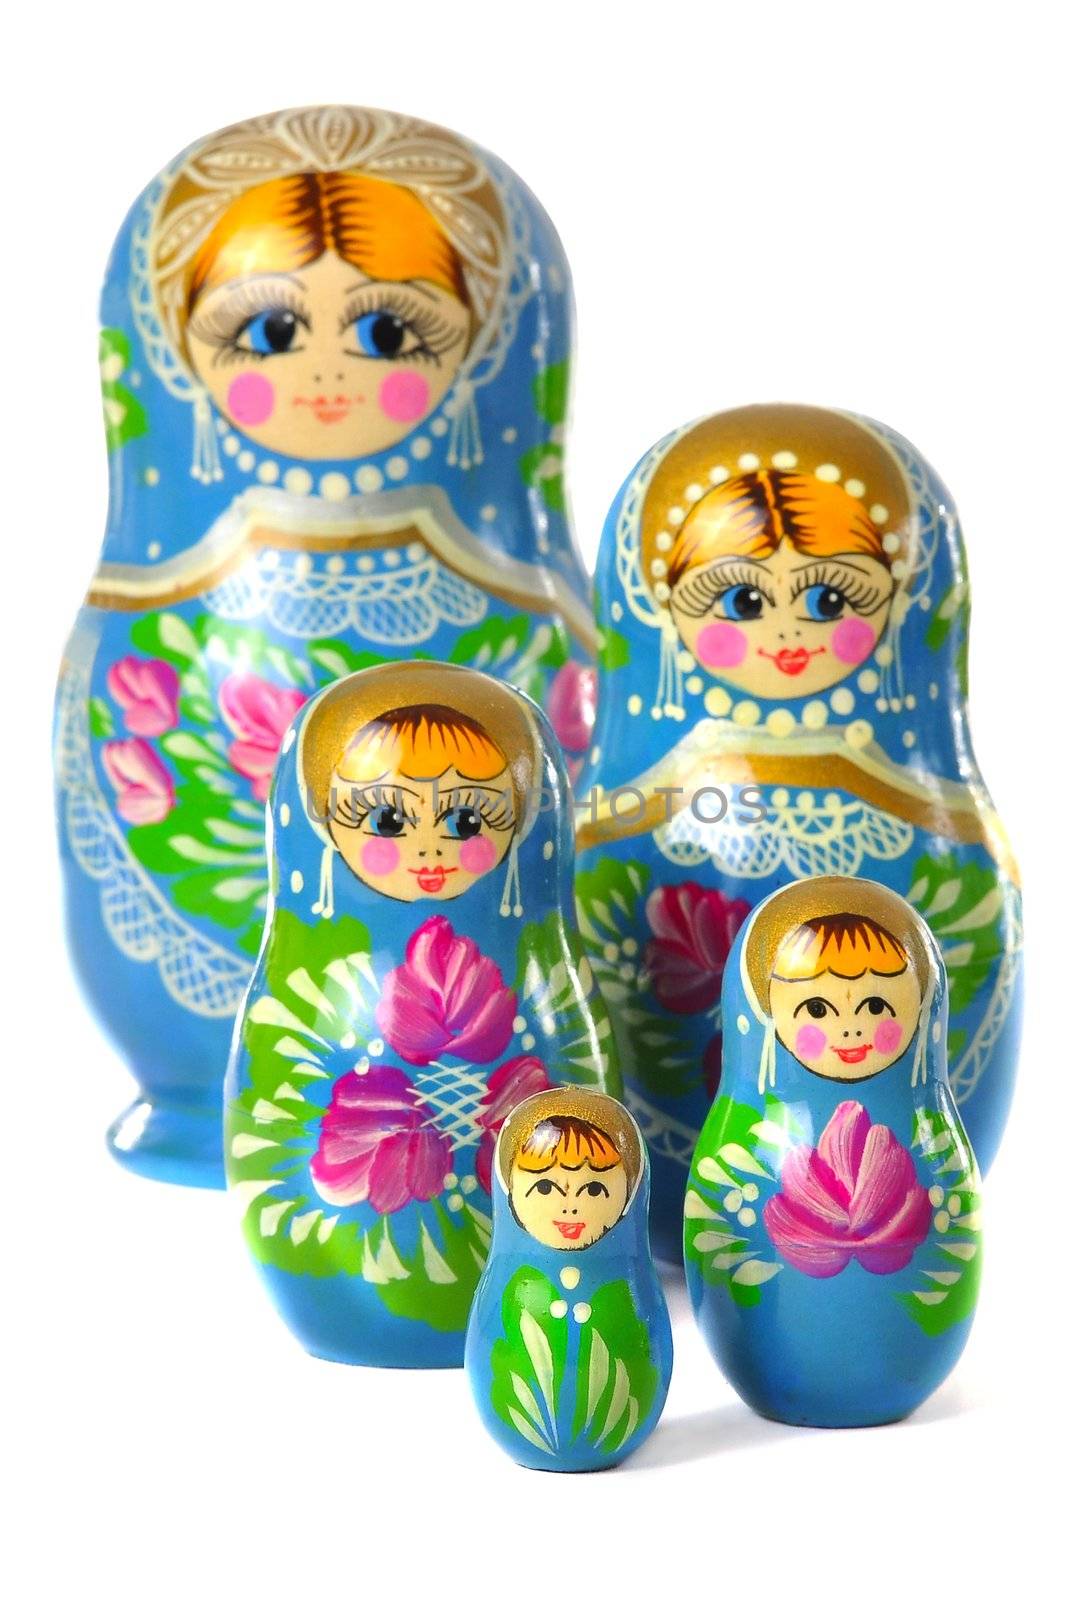 Matrioska Russian Doll, side by side